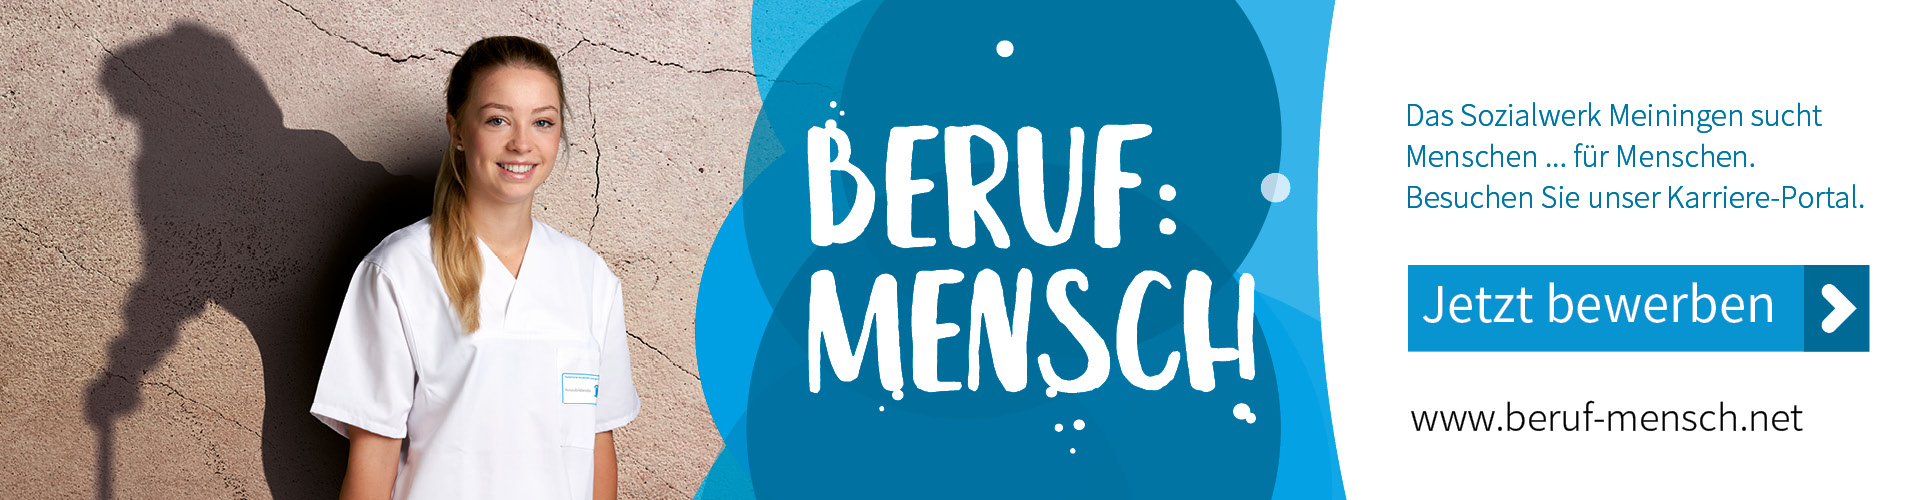 berif-mensch.net